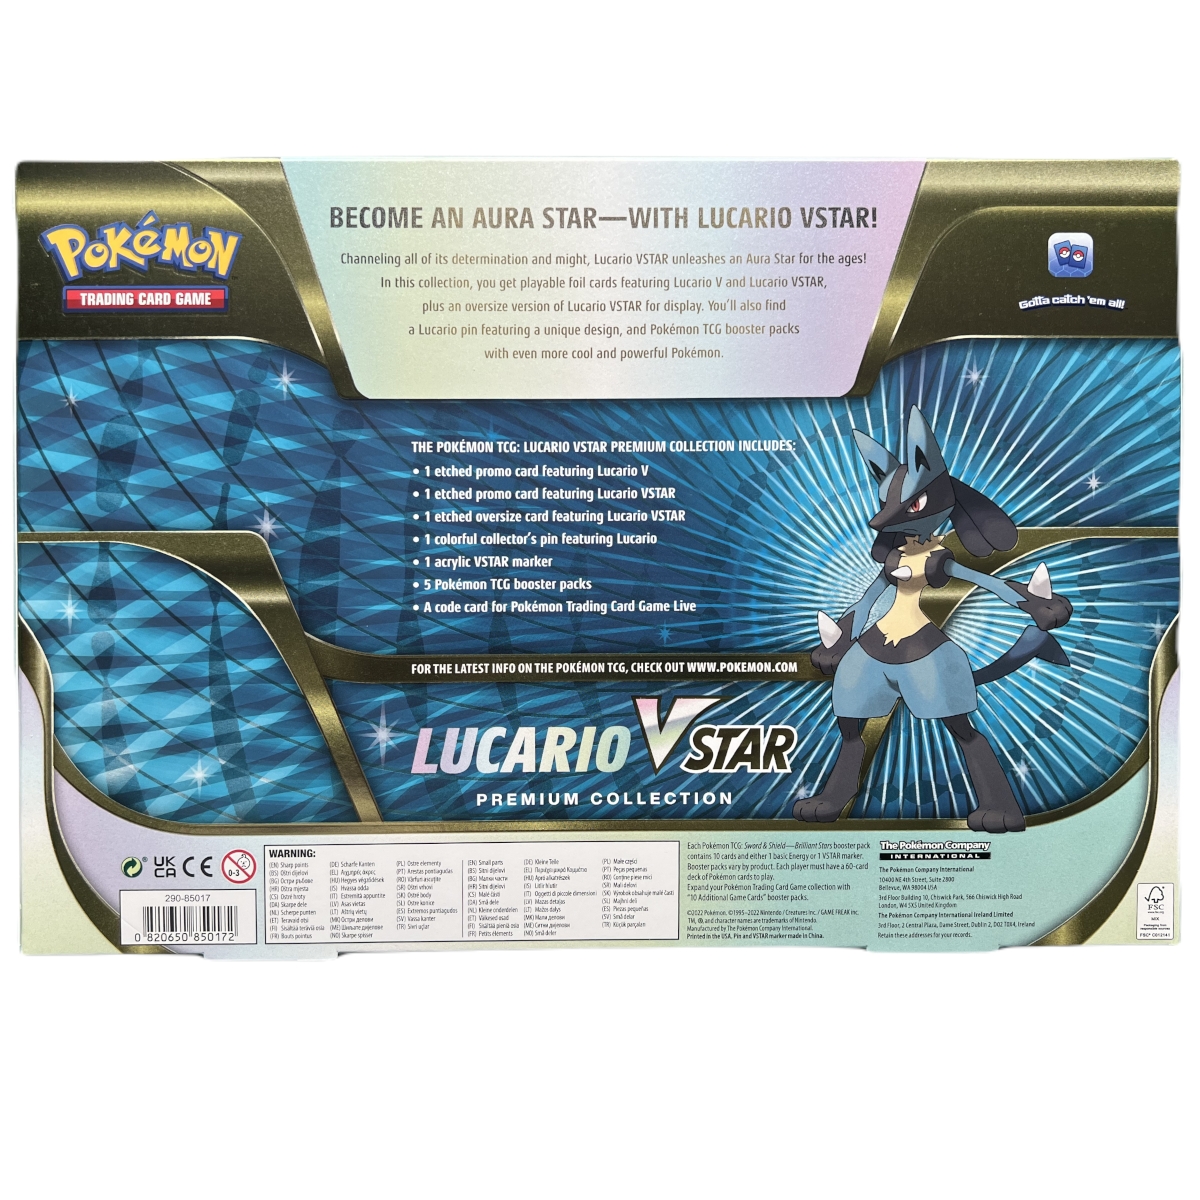 Pokémon - Lucario VSTAR Premium Collection